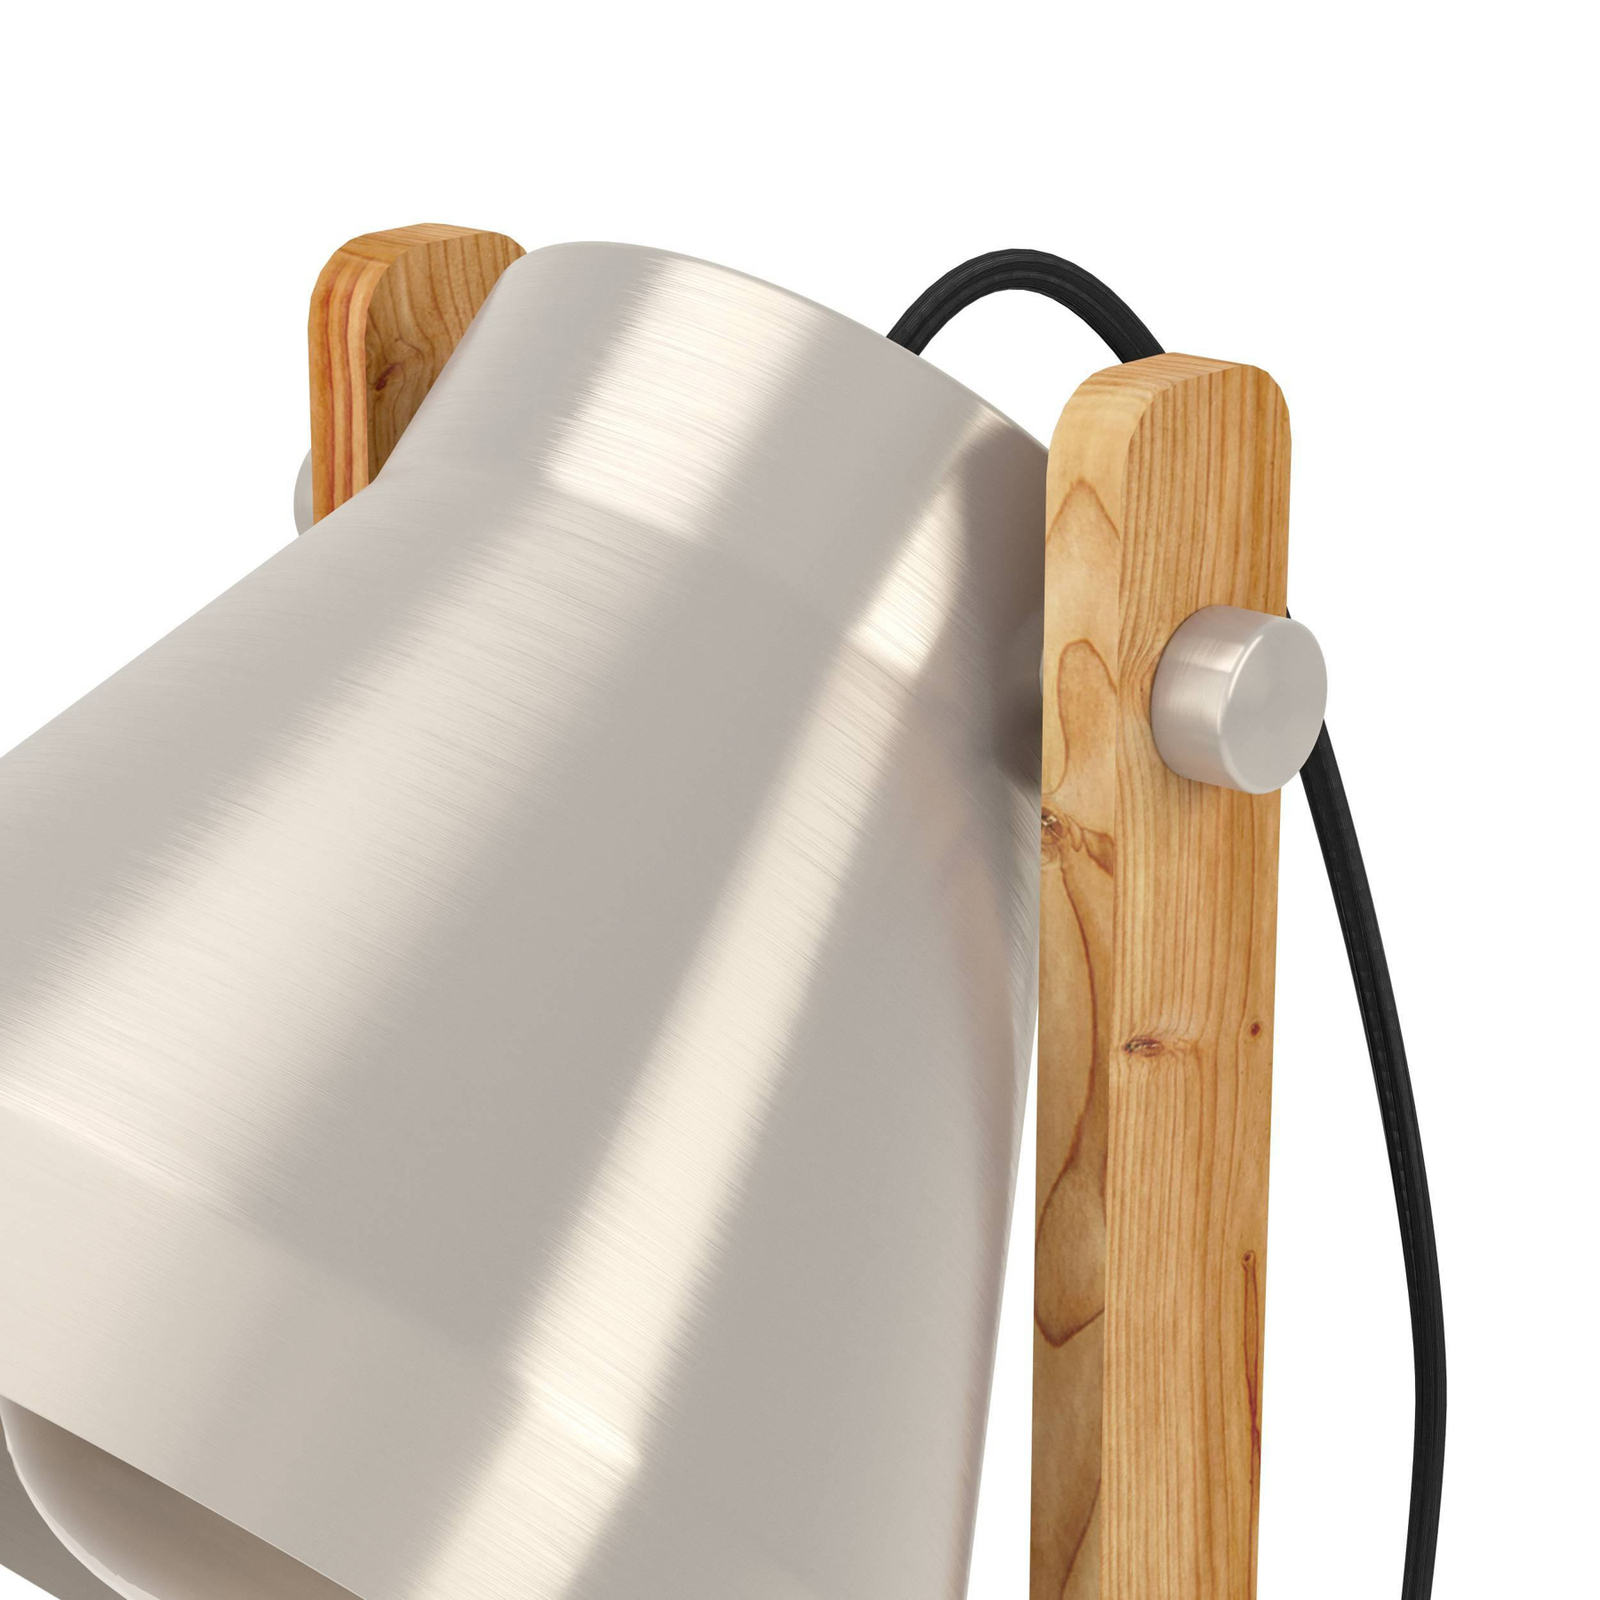 Настолна лампа Cawton, височина 38 cm, стомана/кафяв цвят, стомана/дърво